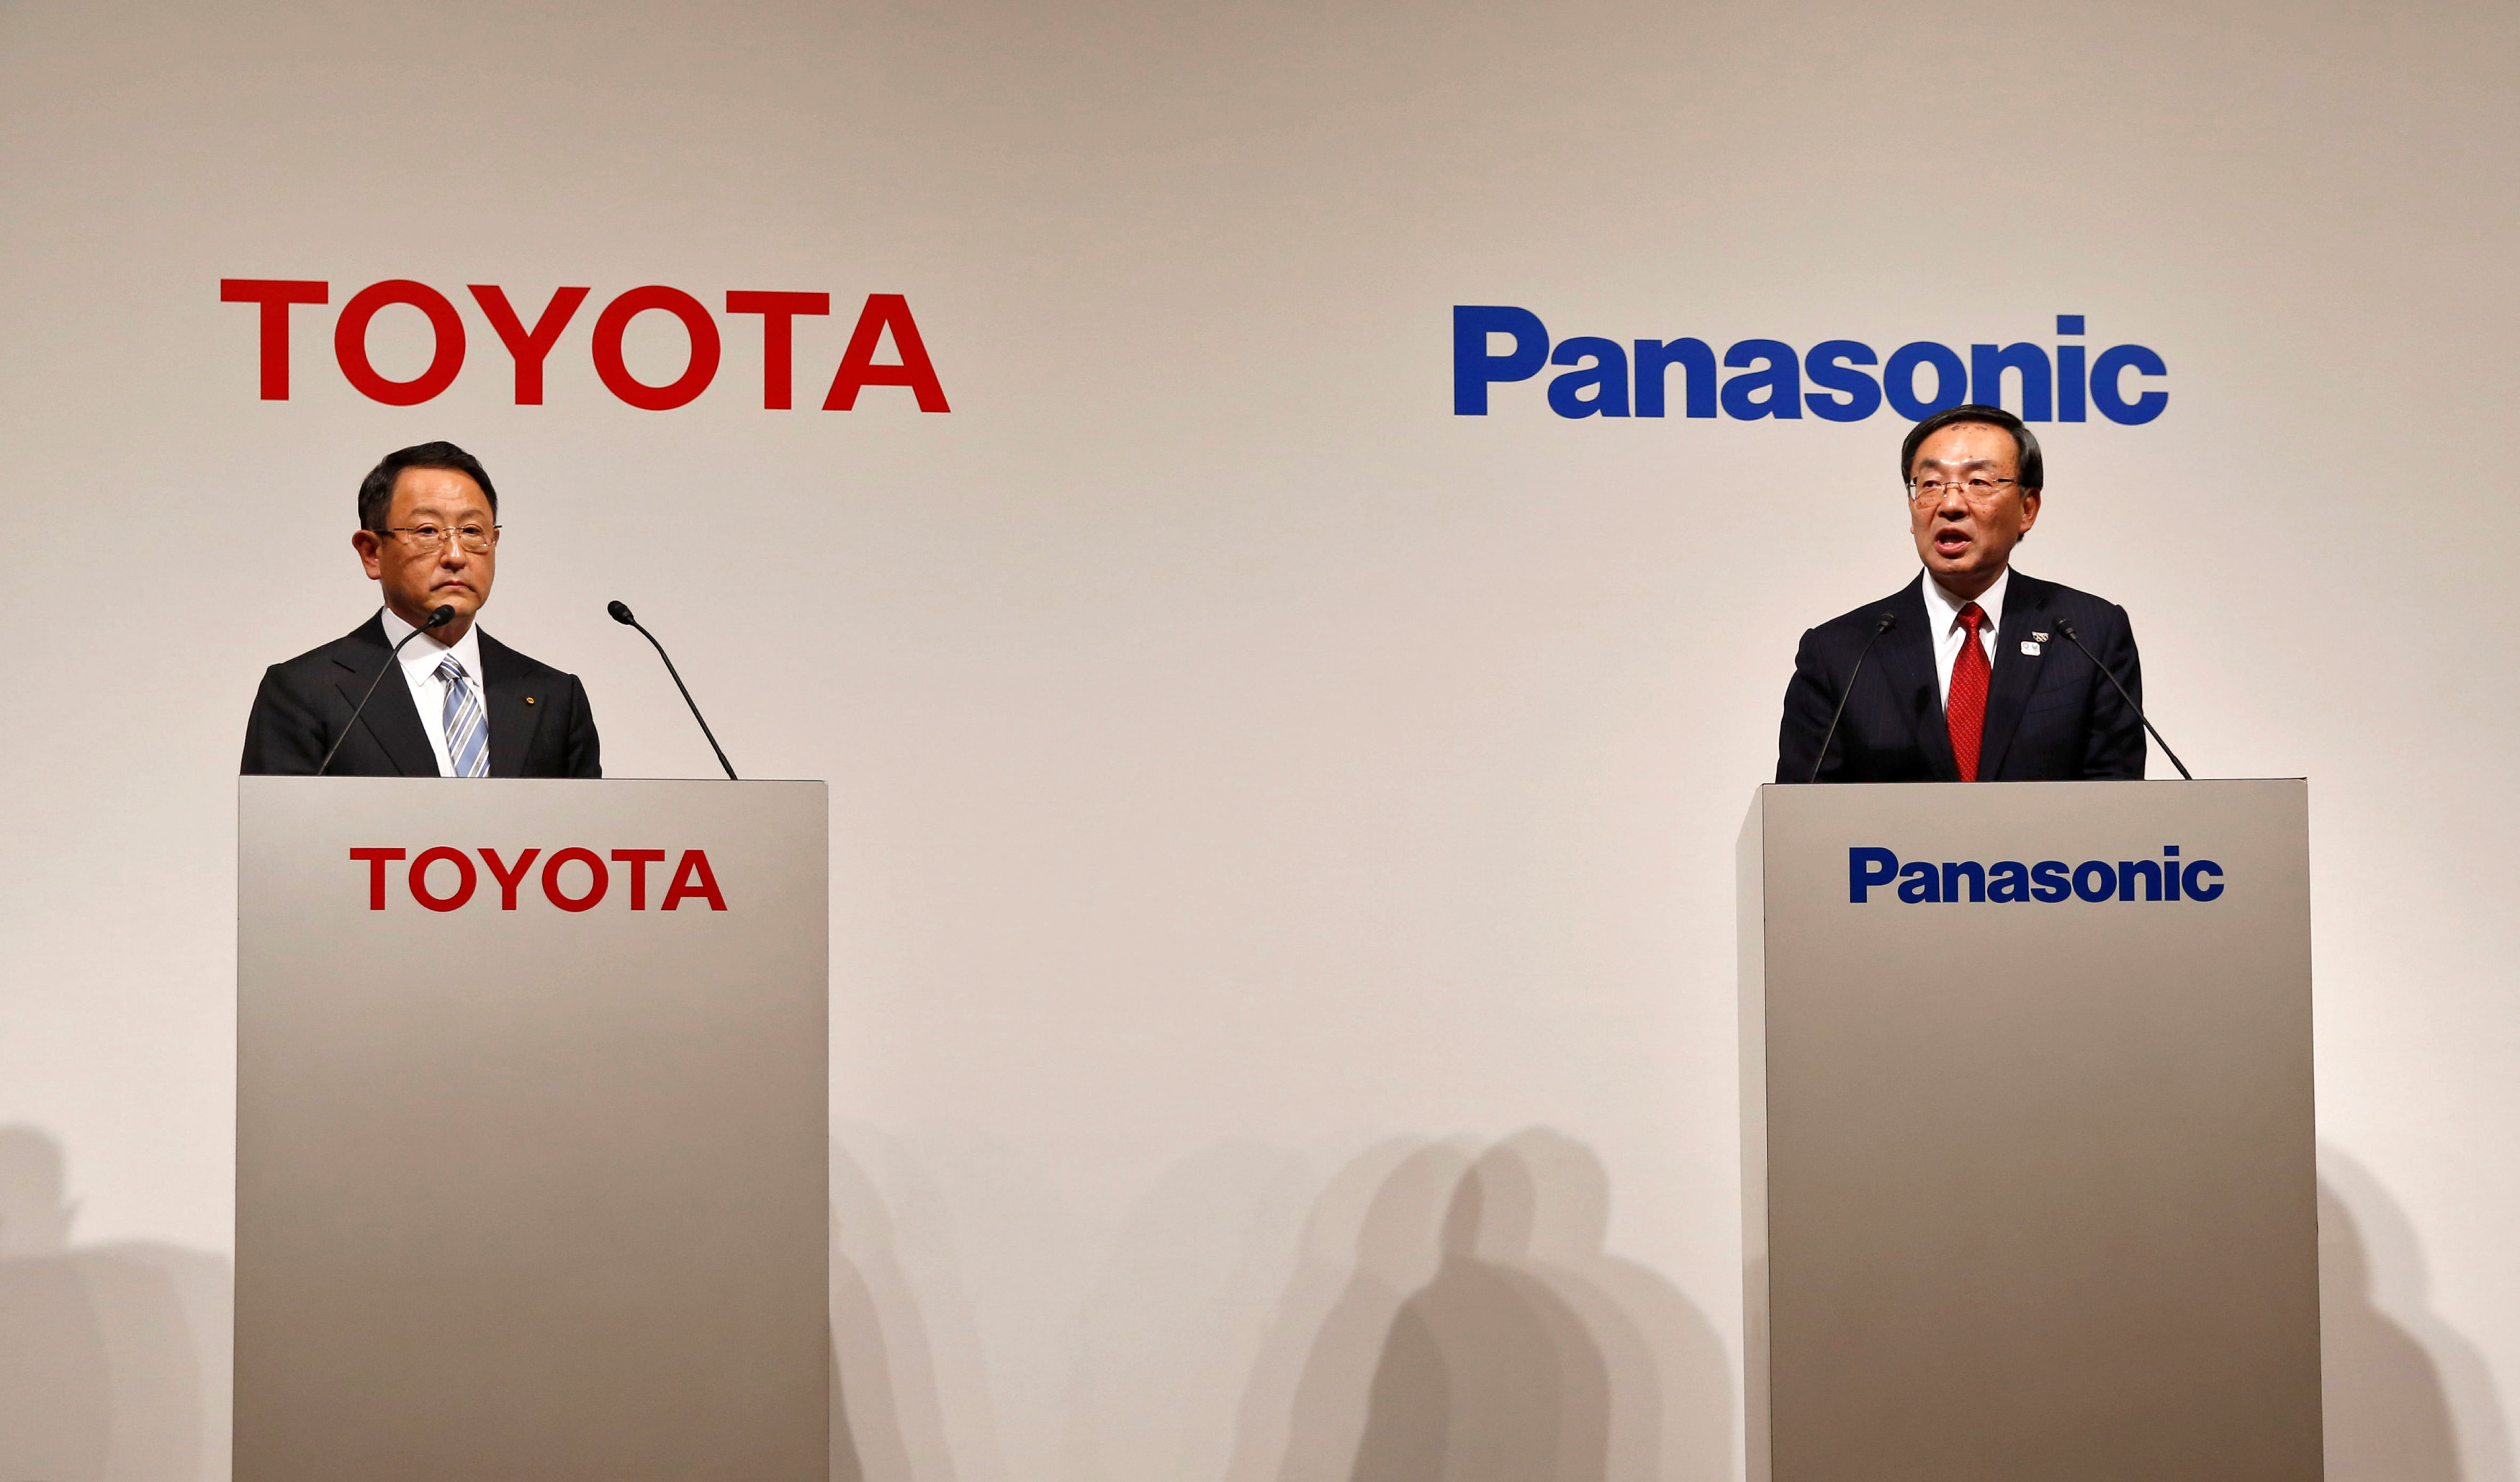 تقرير: شراكة محتملة بين باناسونيك وتويوتا لصناعة بطاريات السيارات الكهربائية